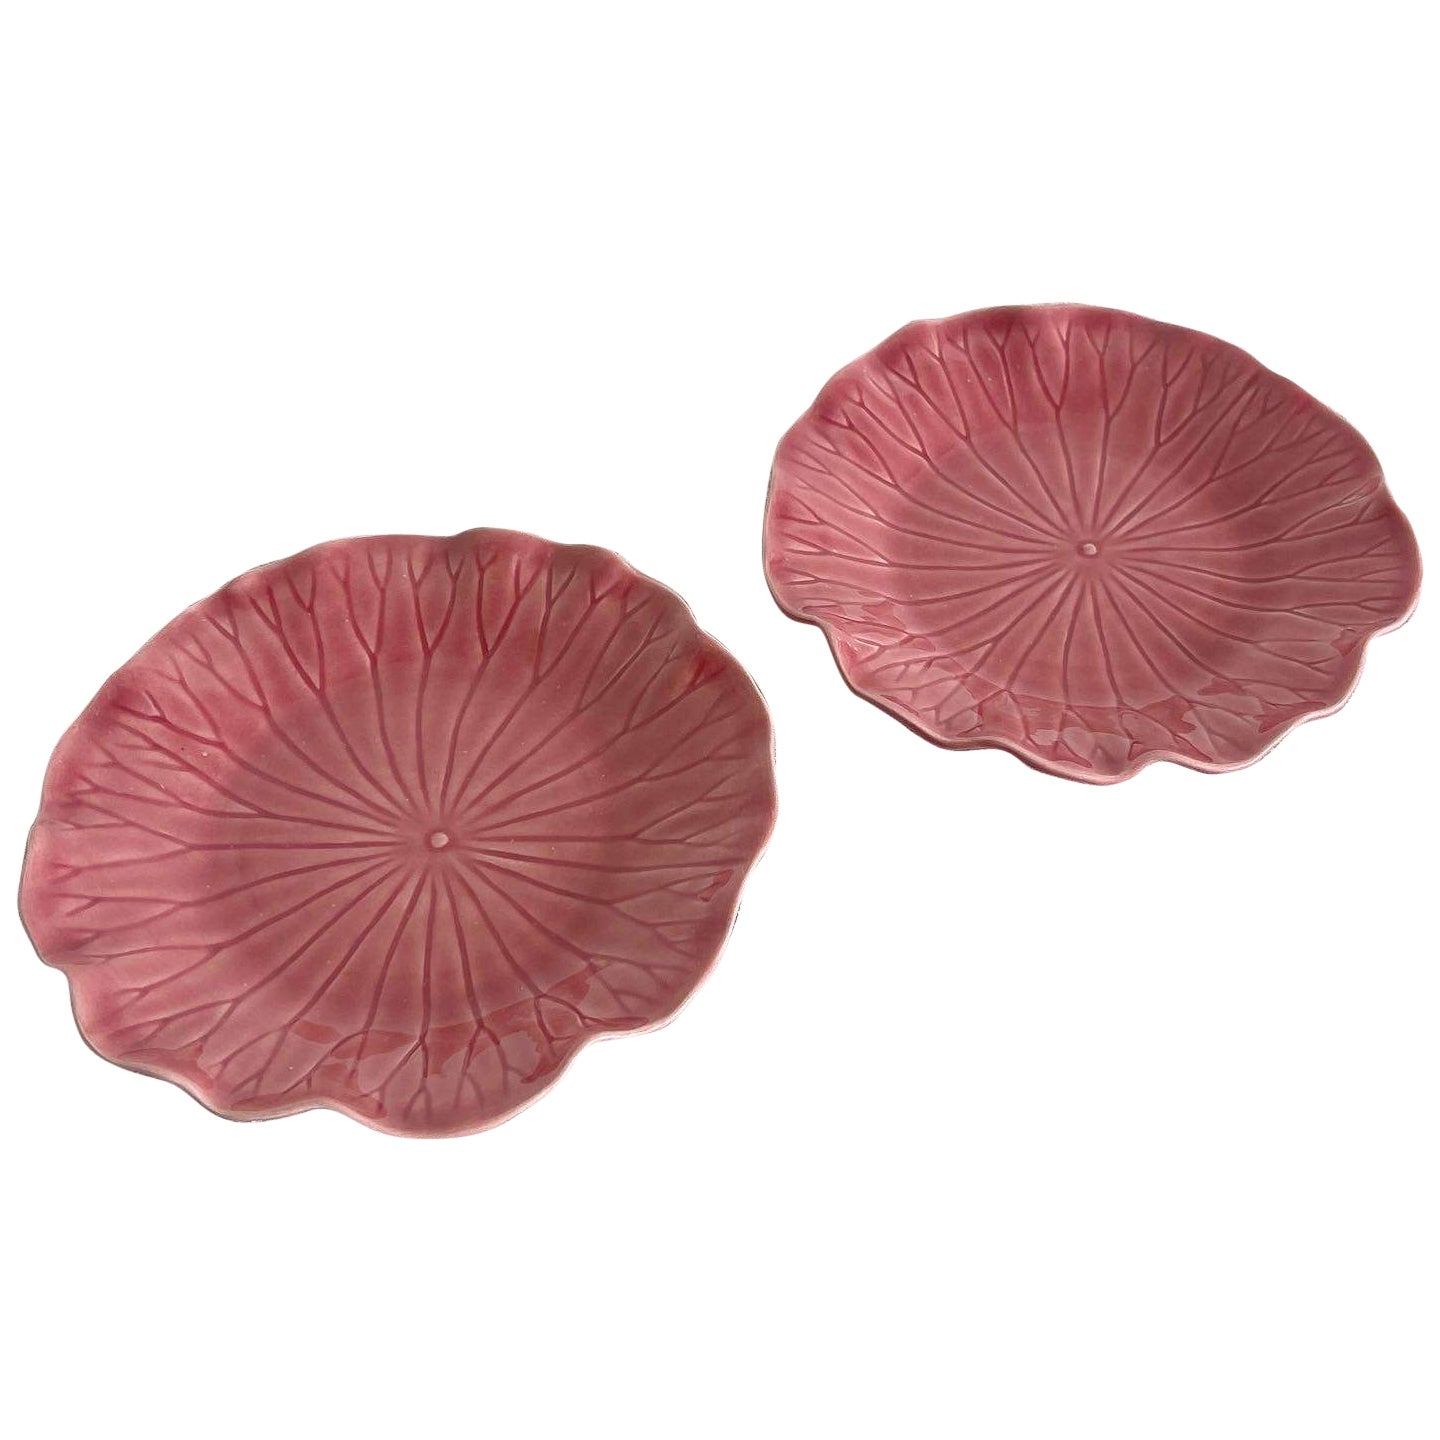 Lotus-Teller aus rosa Metlox mit Ppytrail-Fassung – ein Paar